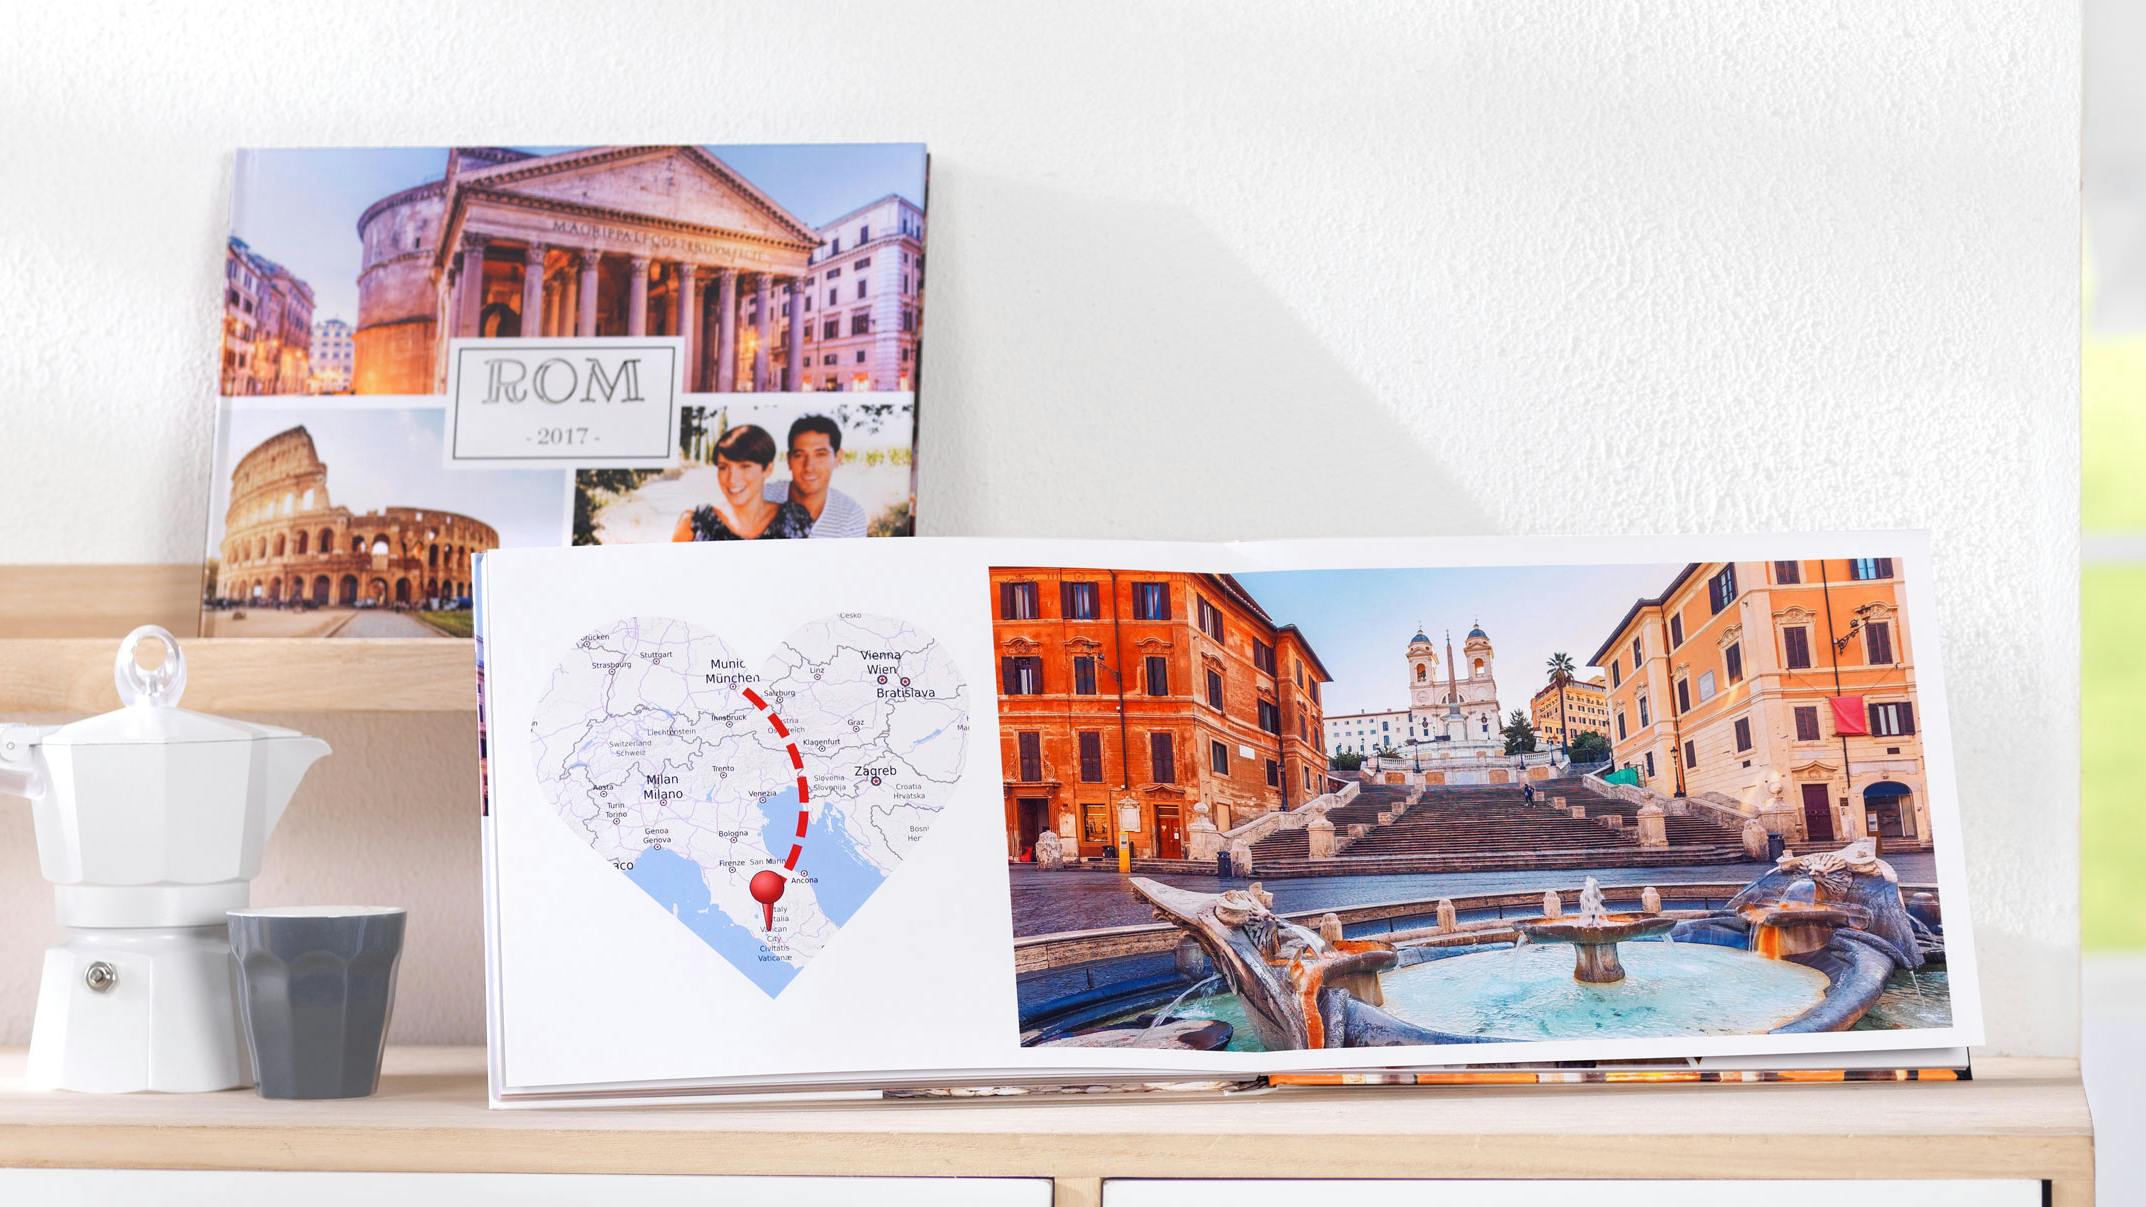 Ein Fotobuch mit Bildern über eine Reise nach Rom und einer Landkarte mit eingefügter Reiseroute